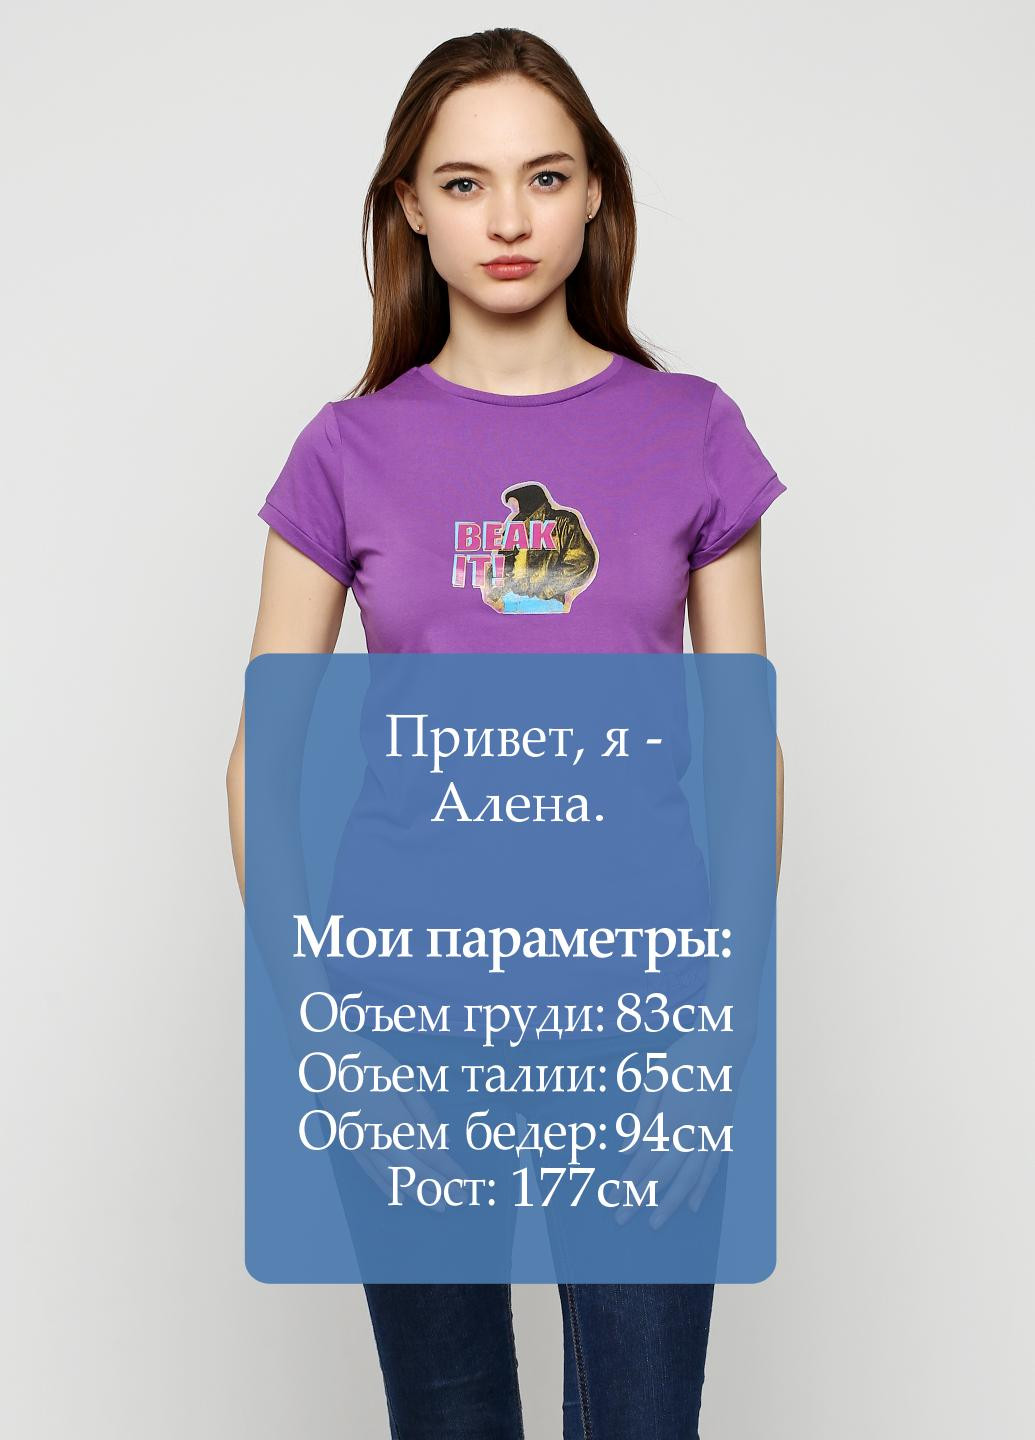 Фиолетовая летняя футболка Matix